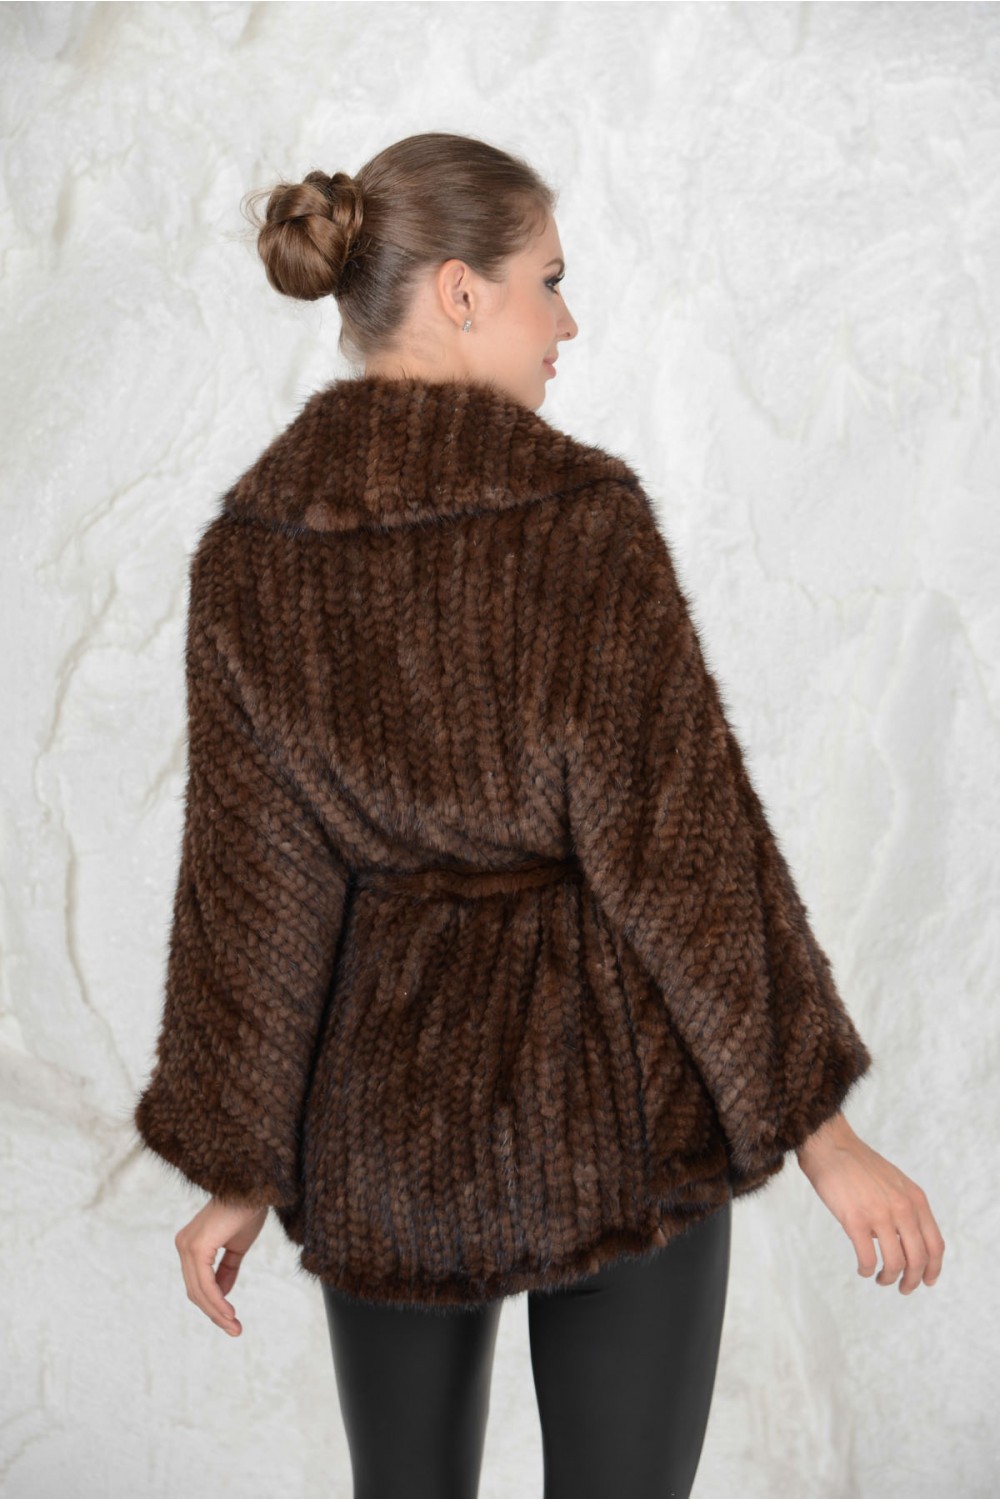 Пальто-пончо с разрезами вместо рукавов (Вязание спицами) – Журнал Вдохновение Рукодельницы